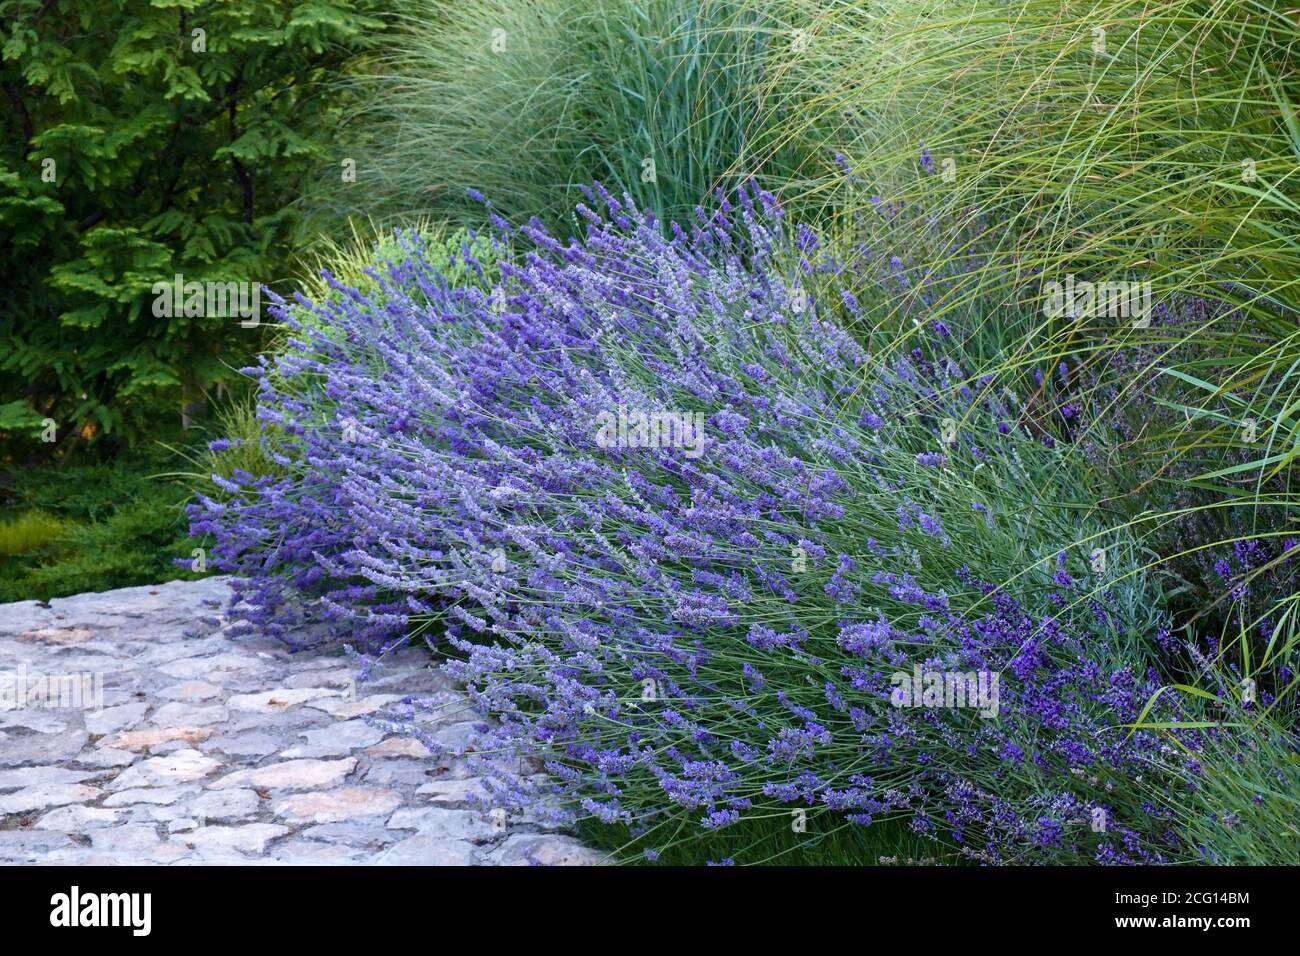 Lilla francese viola fragrante lavanda e alto ornamentale erba da nubile accanto alla passerella in pietra nel giardino fiorito letto Foto Stock